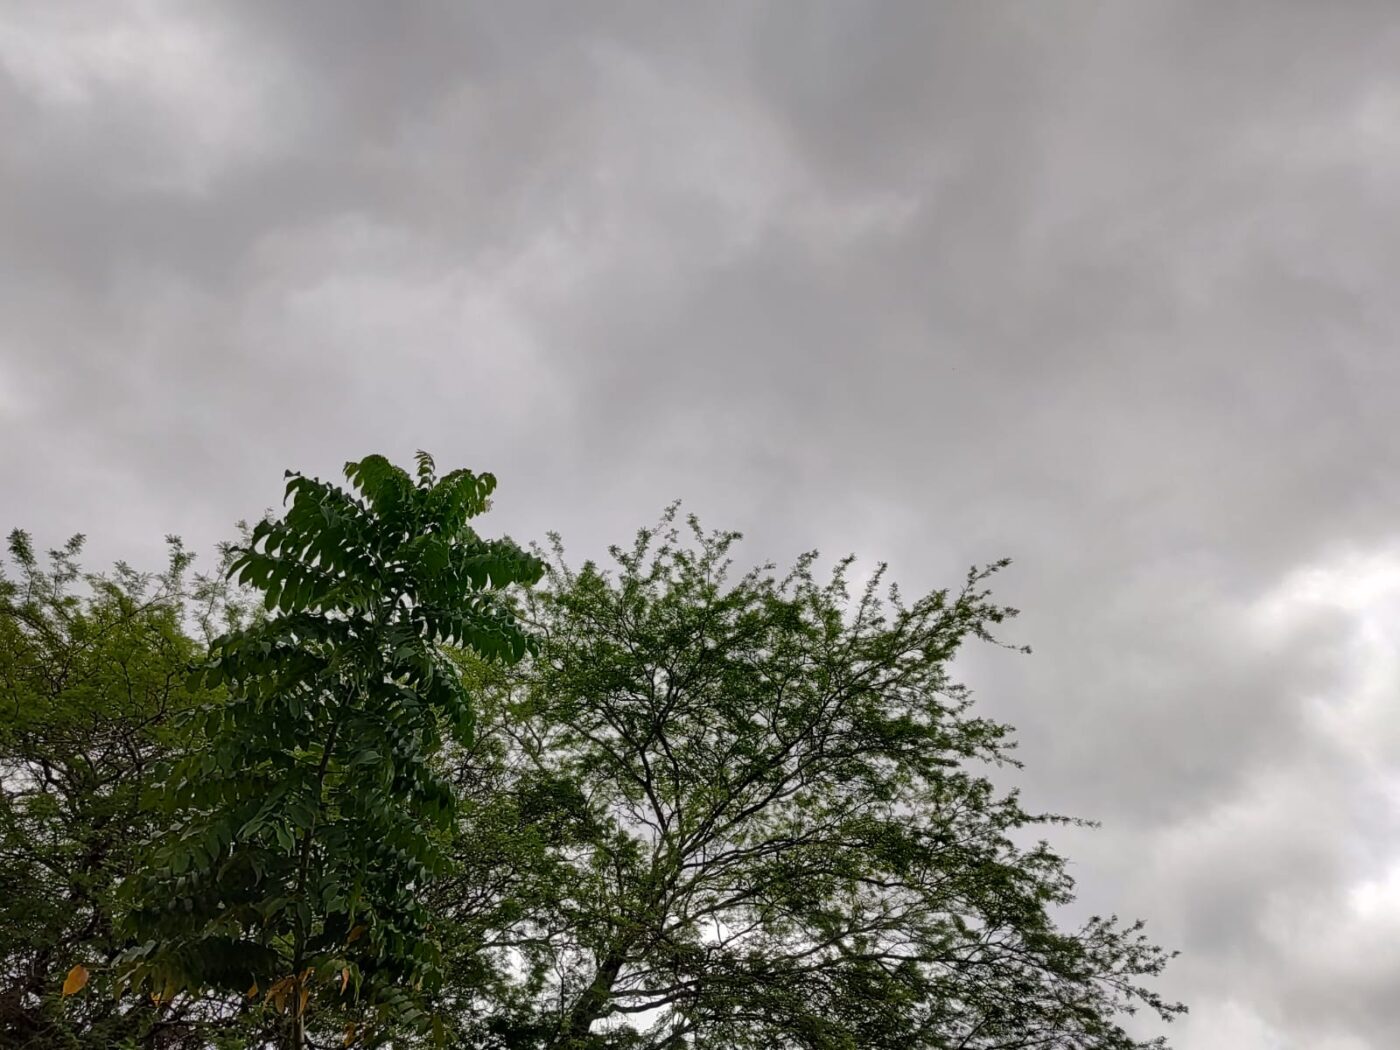 Semana deve seguir com chuvas fracas e moderadas em Salvador; confira previsão